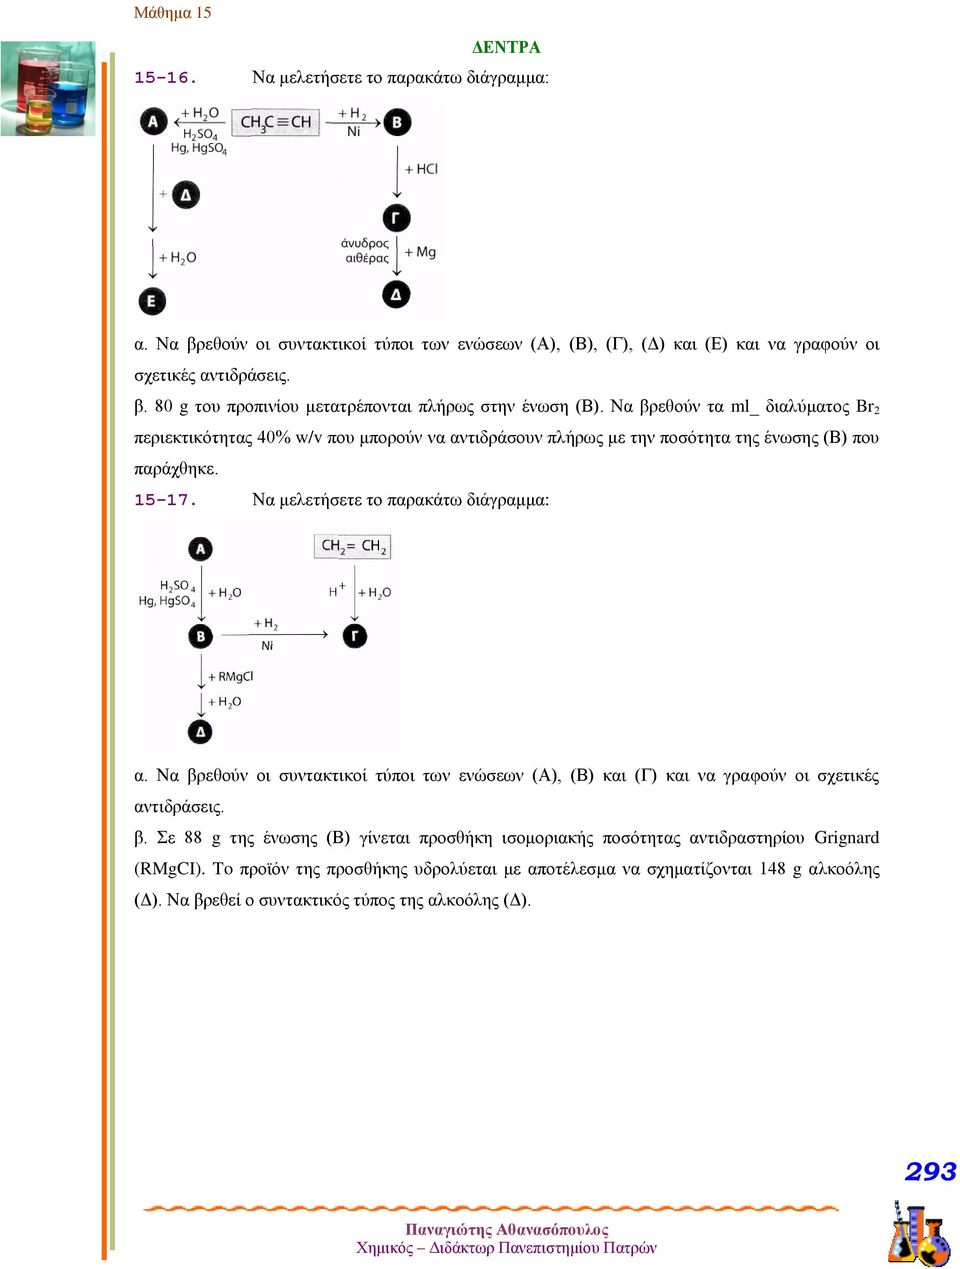 Να βρεθούν οι συντακτικοί τύποι των ενώσεων (Α), (Β) και (Γ) και να γραφούν οι σχετικές αντιδράσεις. β. Σε 88 g της ένωσης (Β) γίνεται προσθήκη ισομοριακής ποσότητας αντιδραστηρίου Grignard (MgI).